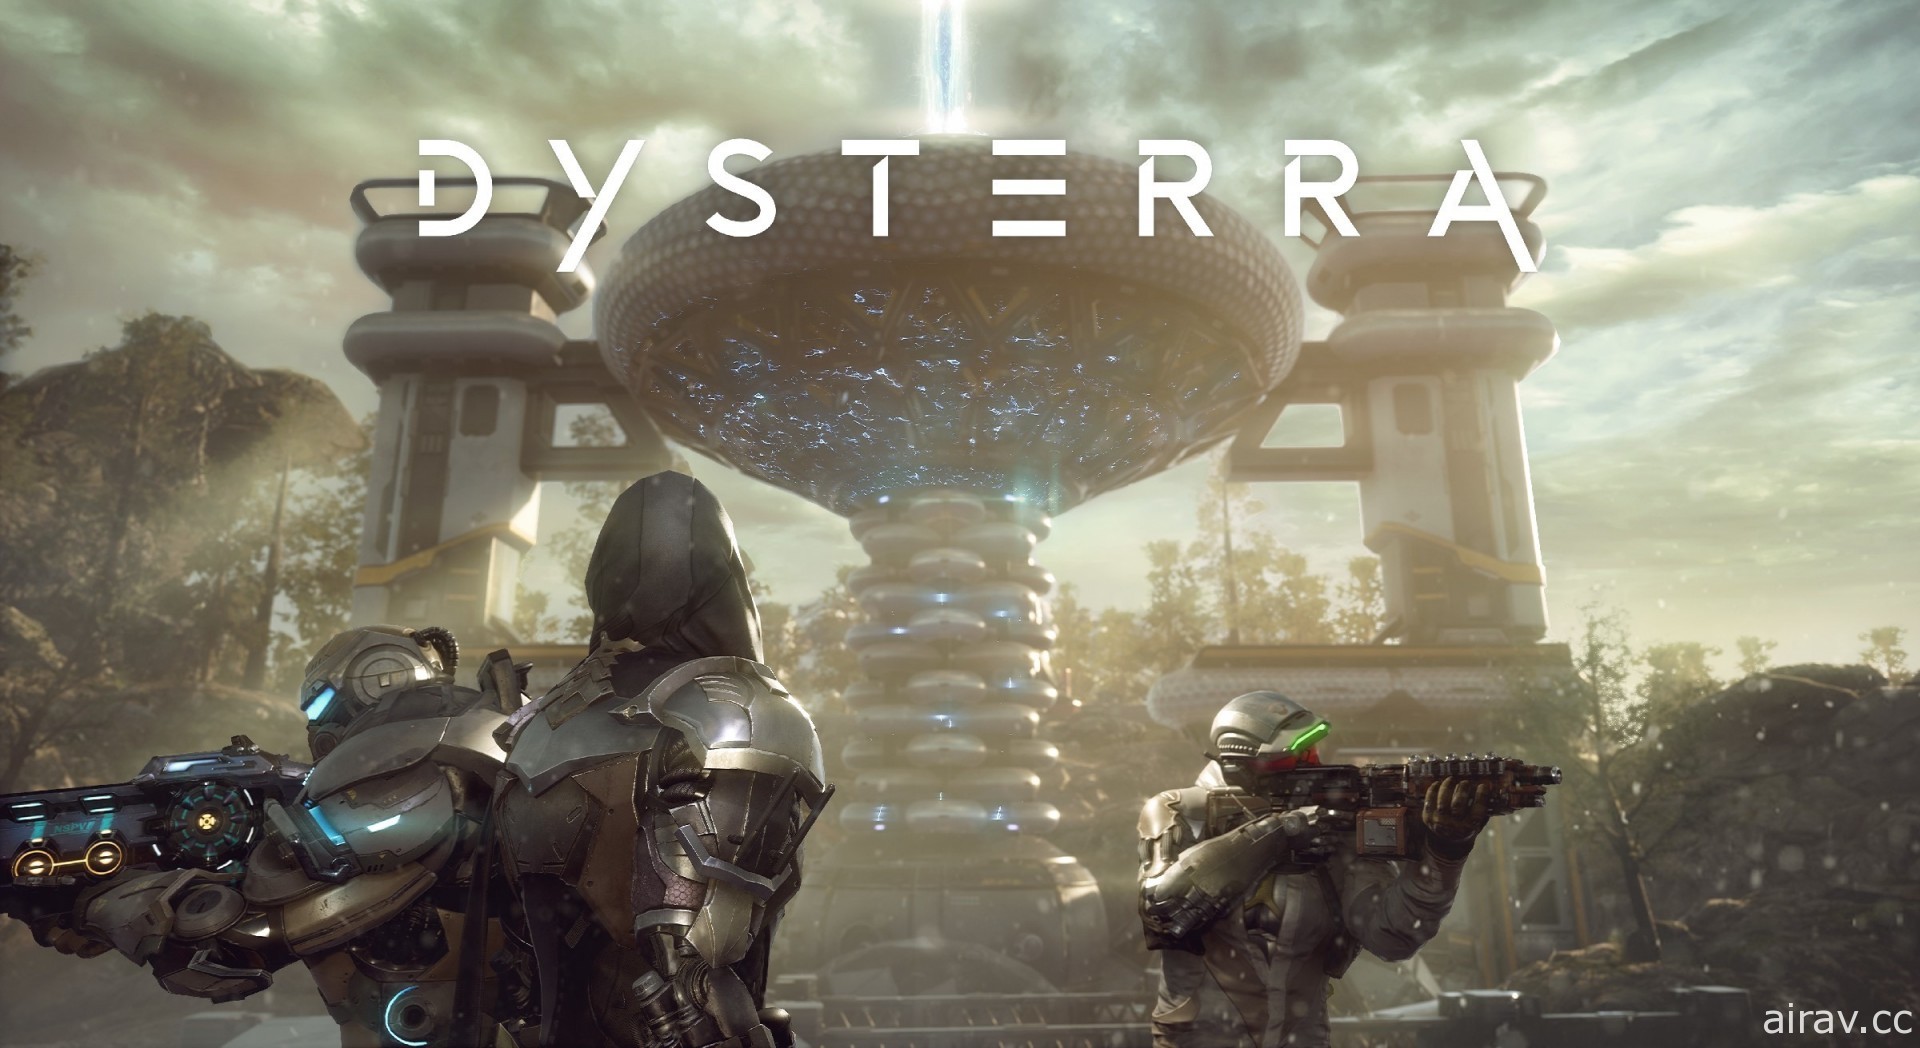 PC 多人生存戰 FPS 遊戲《Dysterra》今日在 Steam 公開免費試玩版